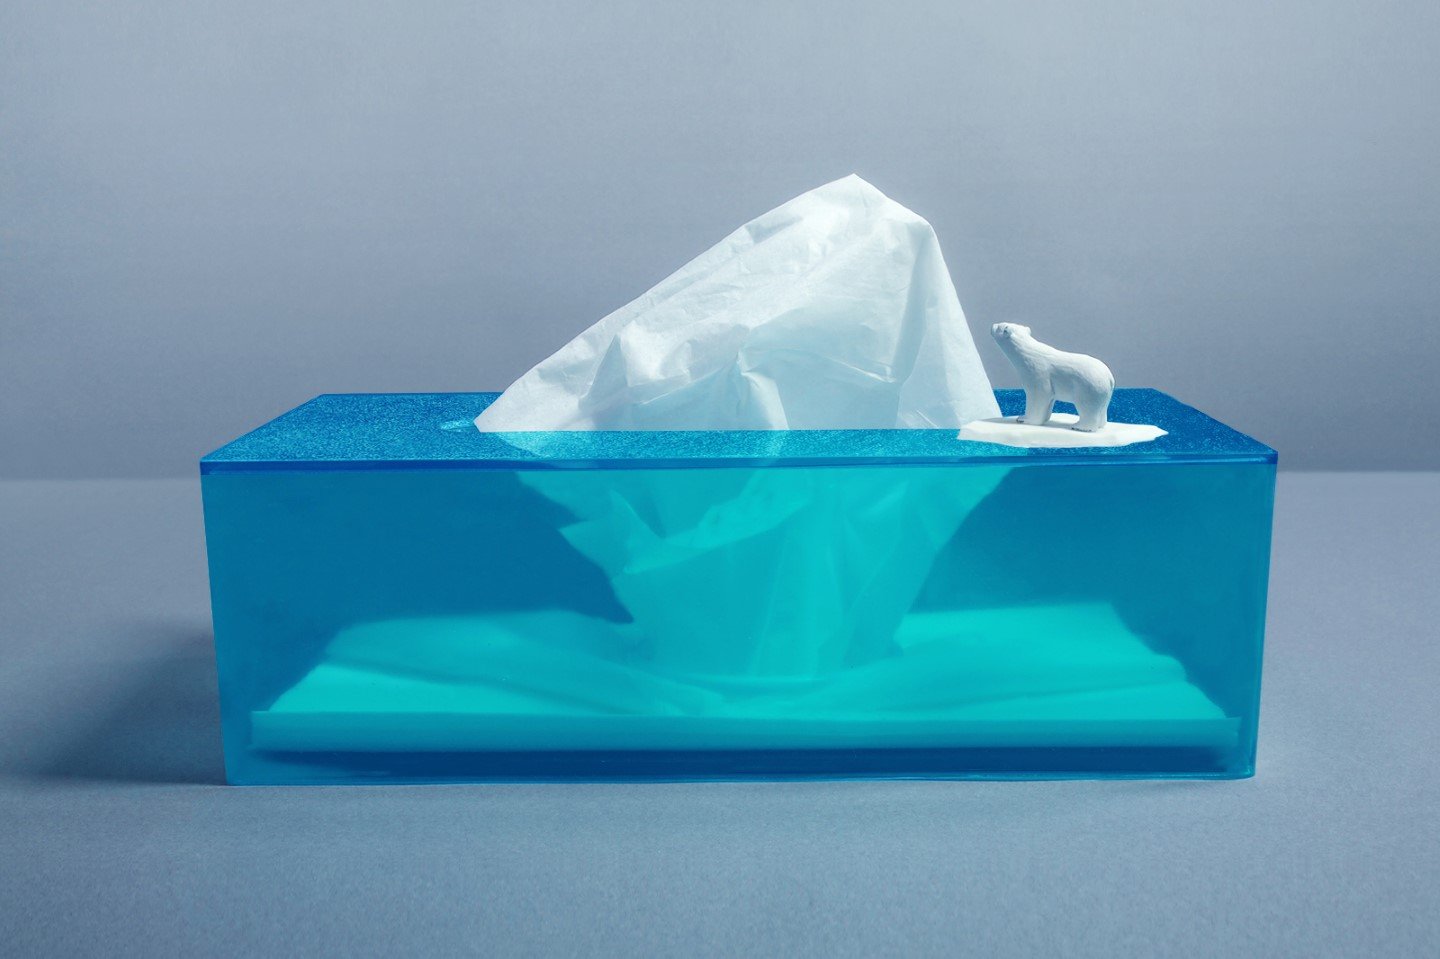 https://www.yankodesign.com/images/design_news/2022/07/auto-draft/iceberg_tissue_box_1.jpg